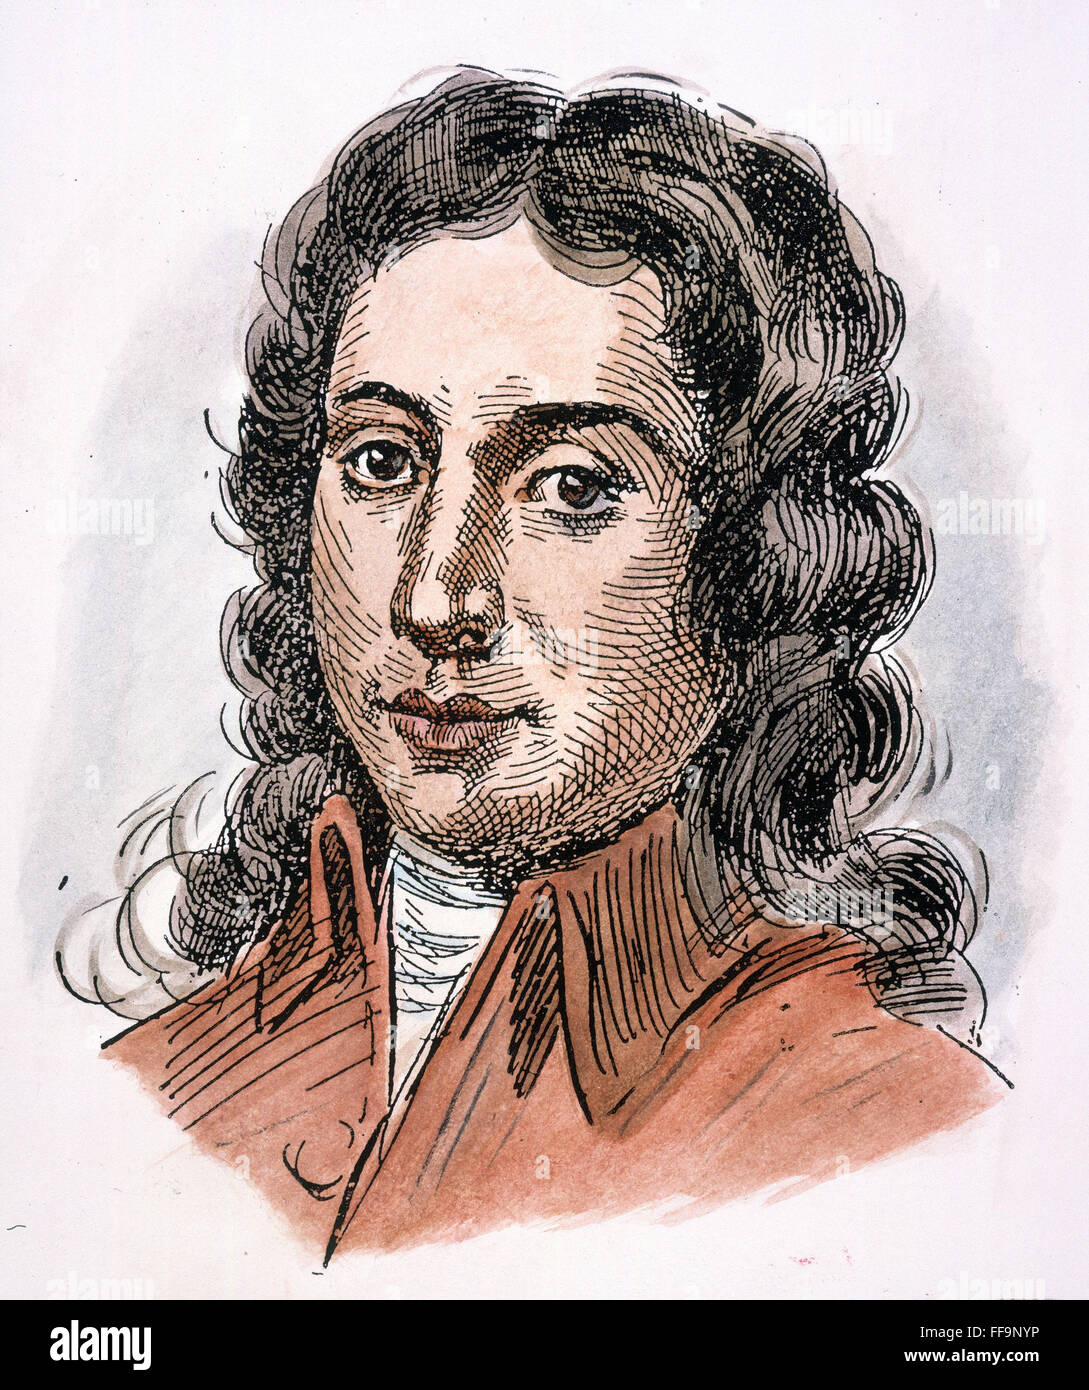 ALESSANDRO SCARLATTI /n(1660-1725). Compositore italiano. Penna e inchiostro disegno, c1900. Foto Stock